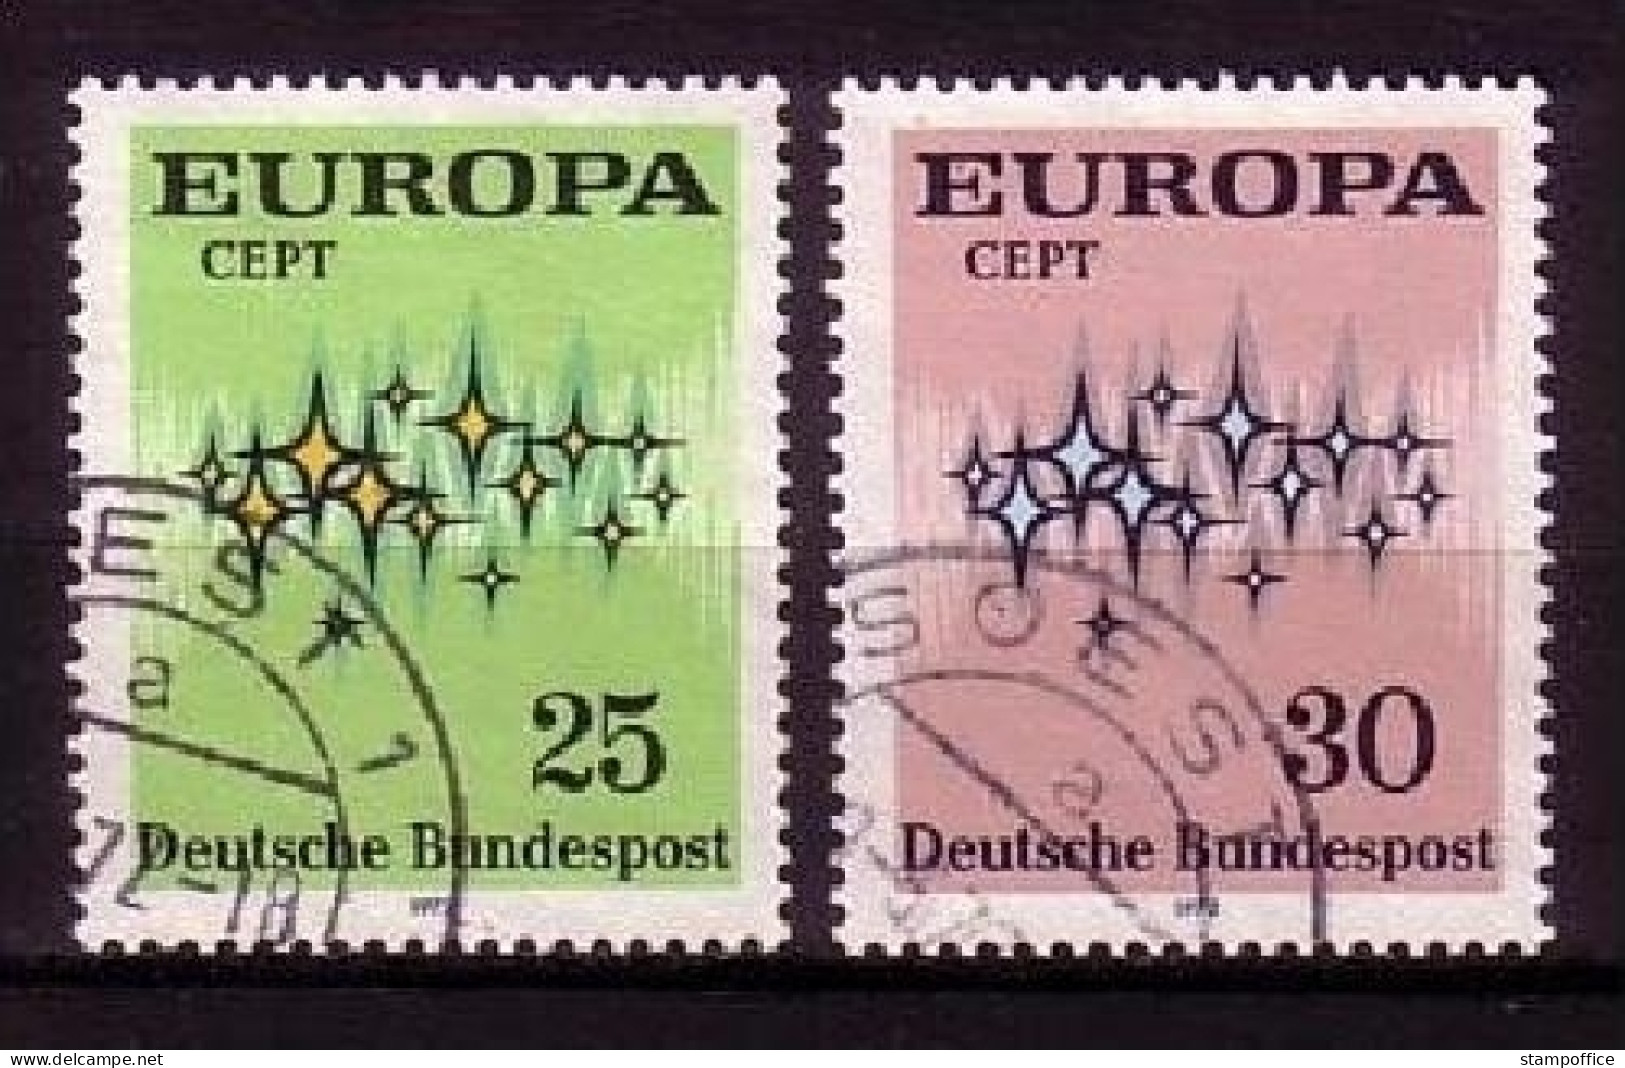 DEUTSCHLAND MI-NR. 716-717 O EUROPA 1972 - STERNE - 1972